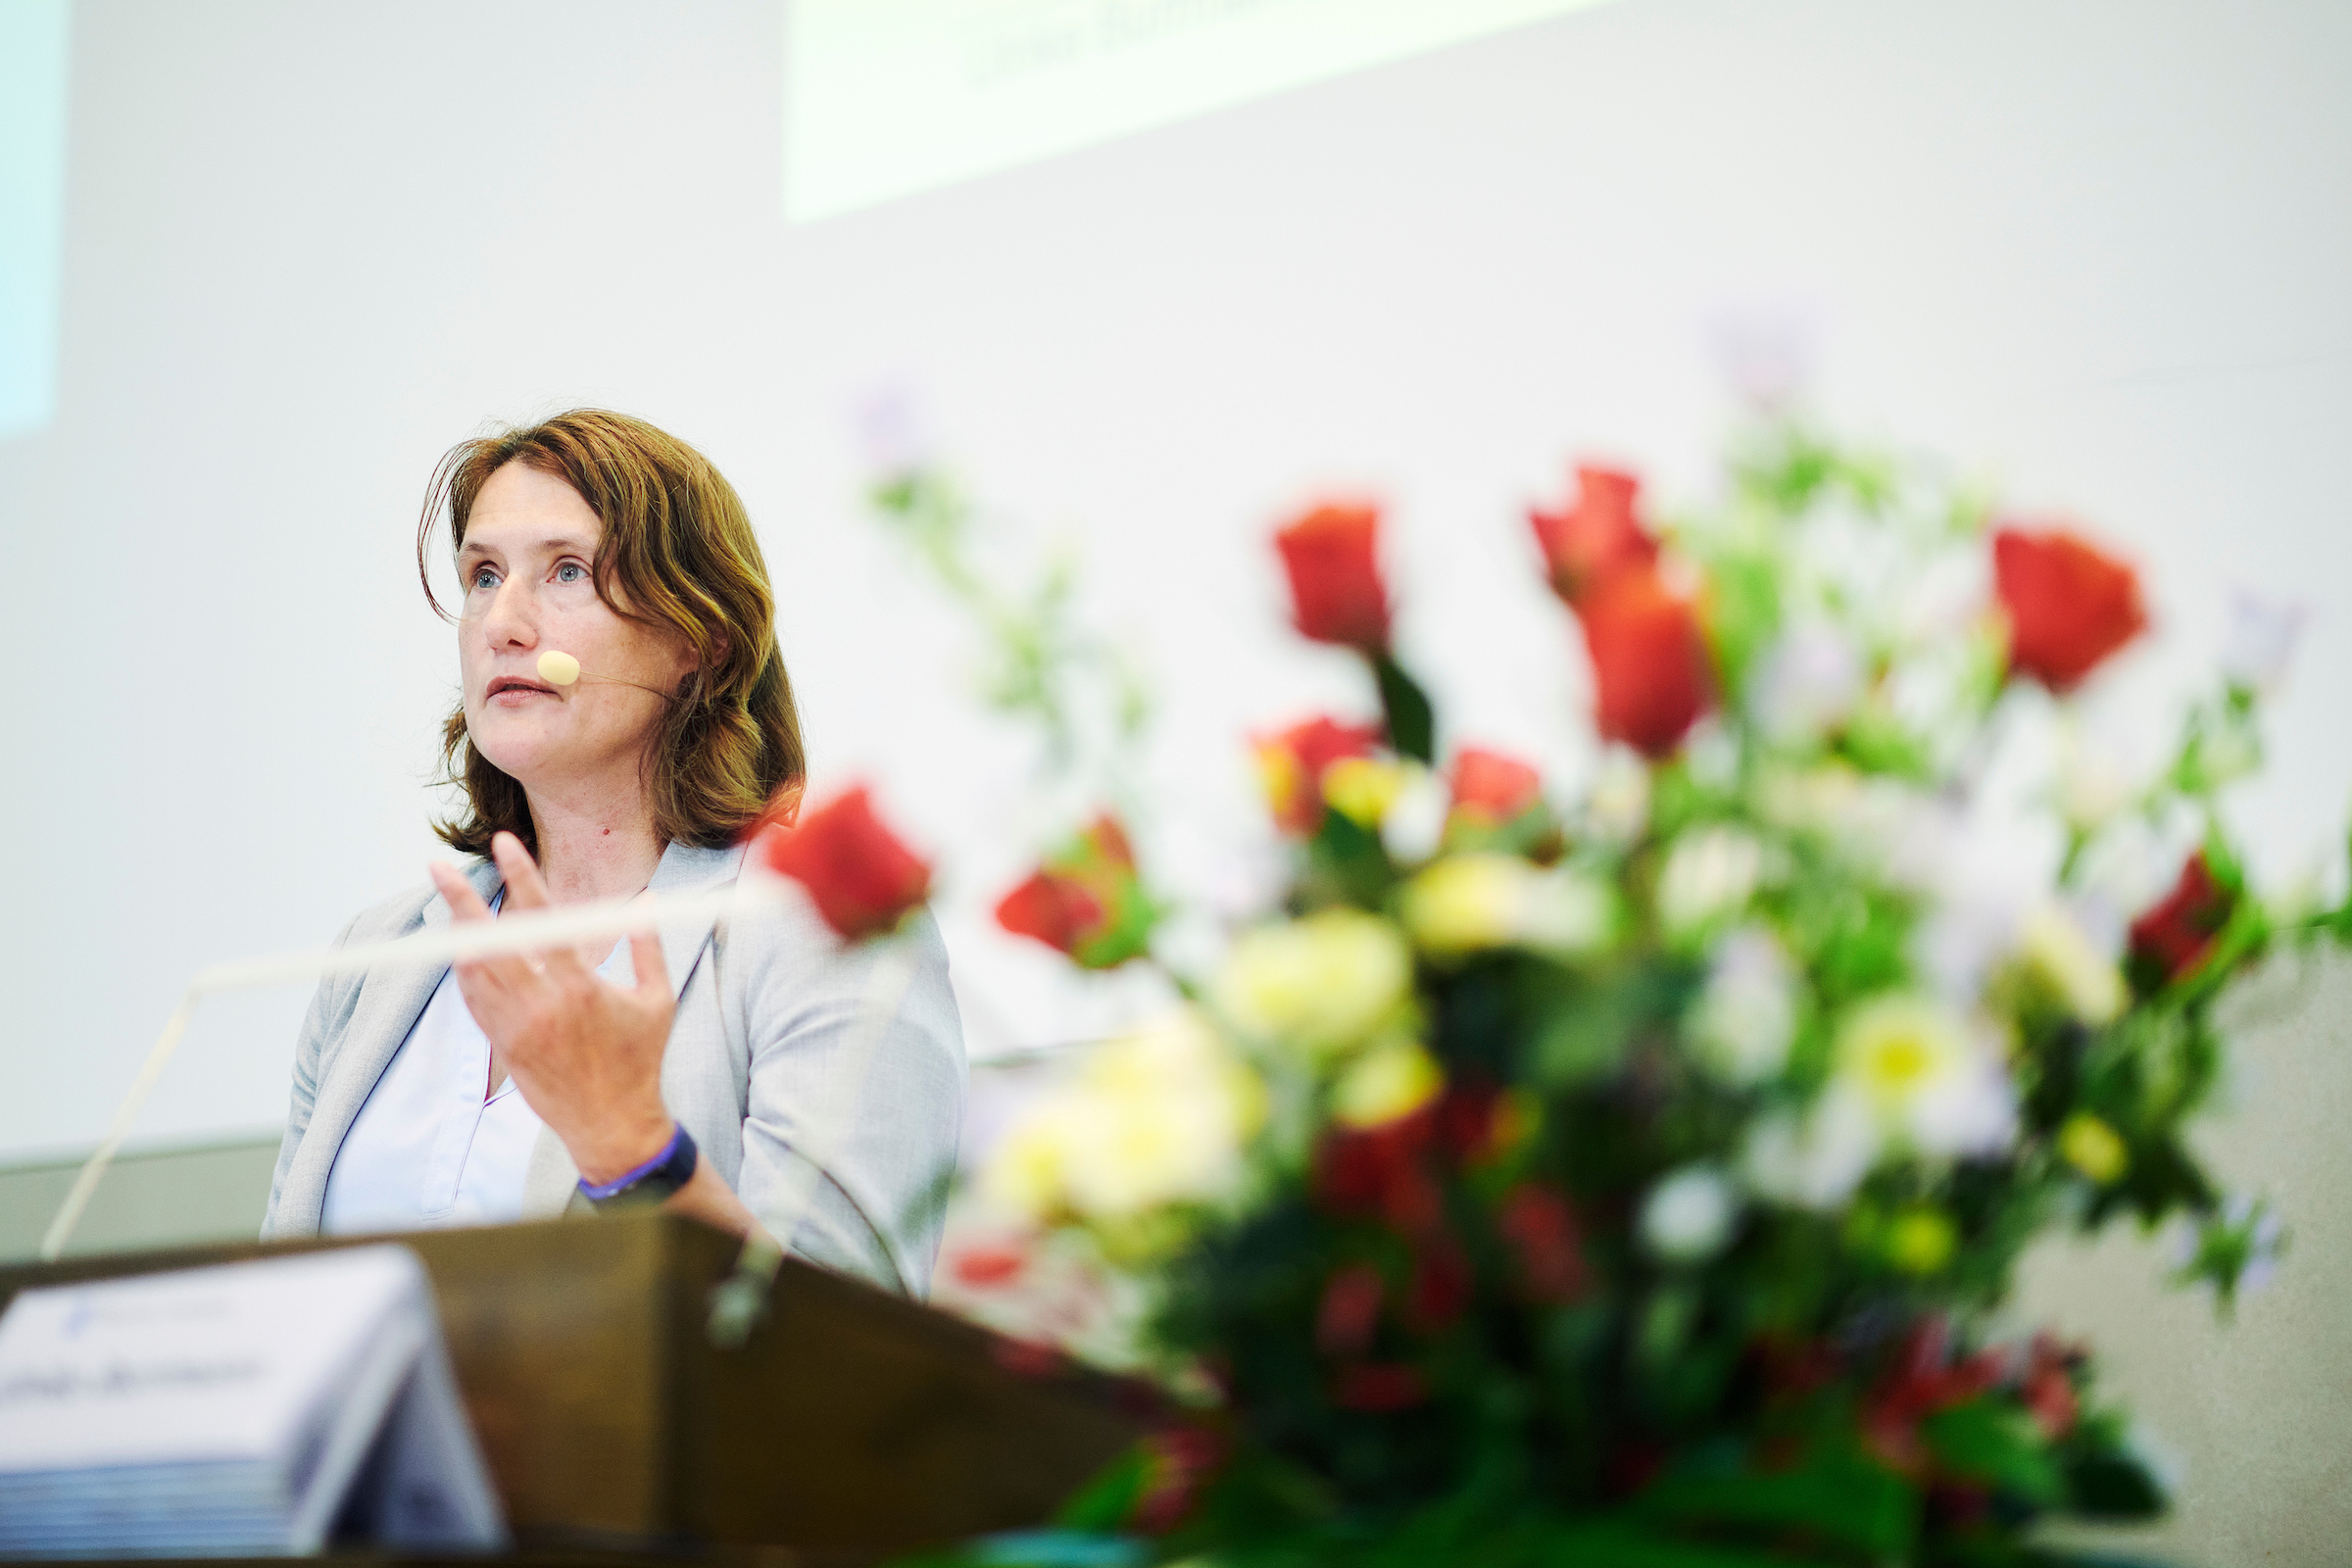 Die Referentin Ulrike Burrmann von der Humboldt-Universität zu Berlin während ihrem Referat an der Universität Bern. Neben ihr steht als Raumschmuck ein grosser Blumenstrauss